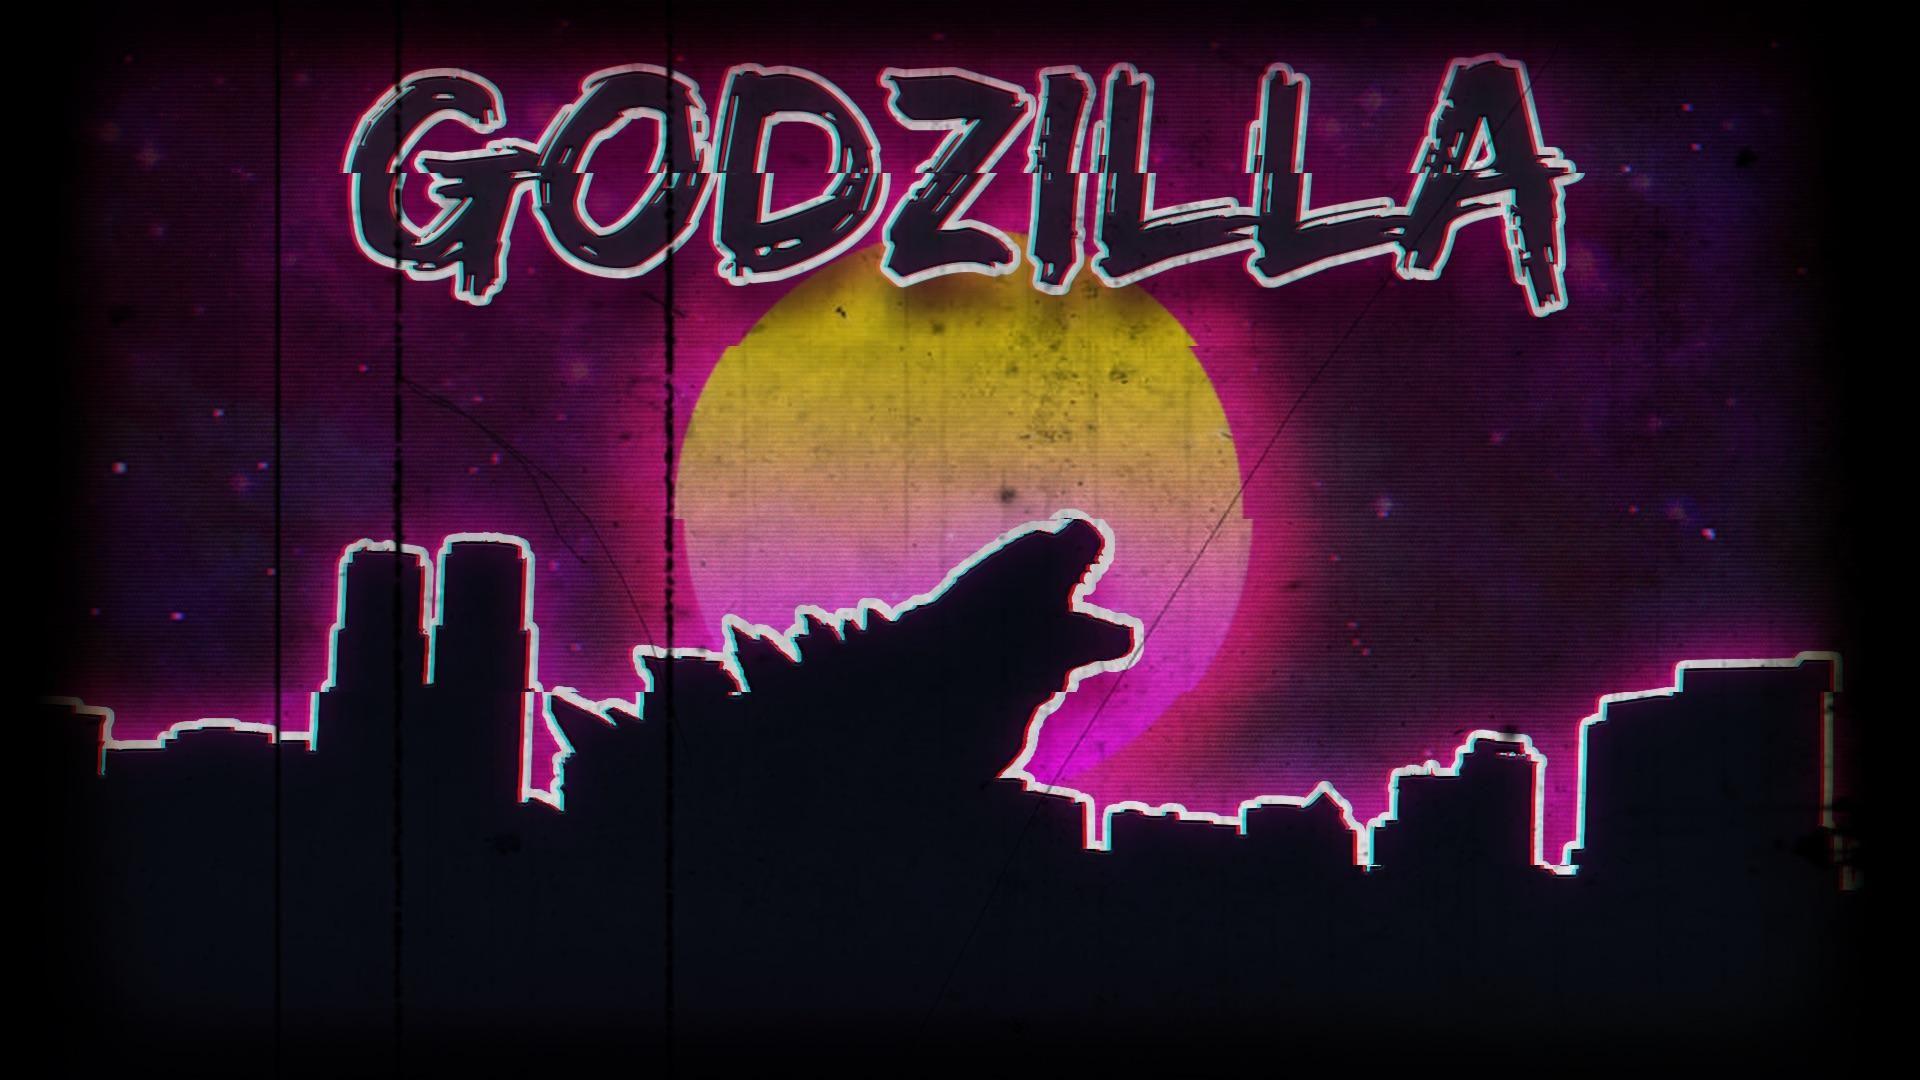 A retro 80s style godzilla wallpaper I threw together in photohop. [1920x1080] via Classy Bro. Godzilla wallpaper, Wallpaper, Godzilla